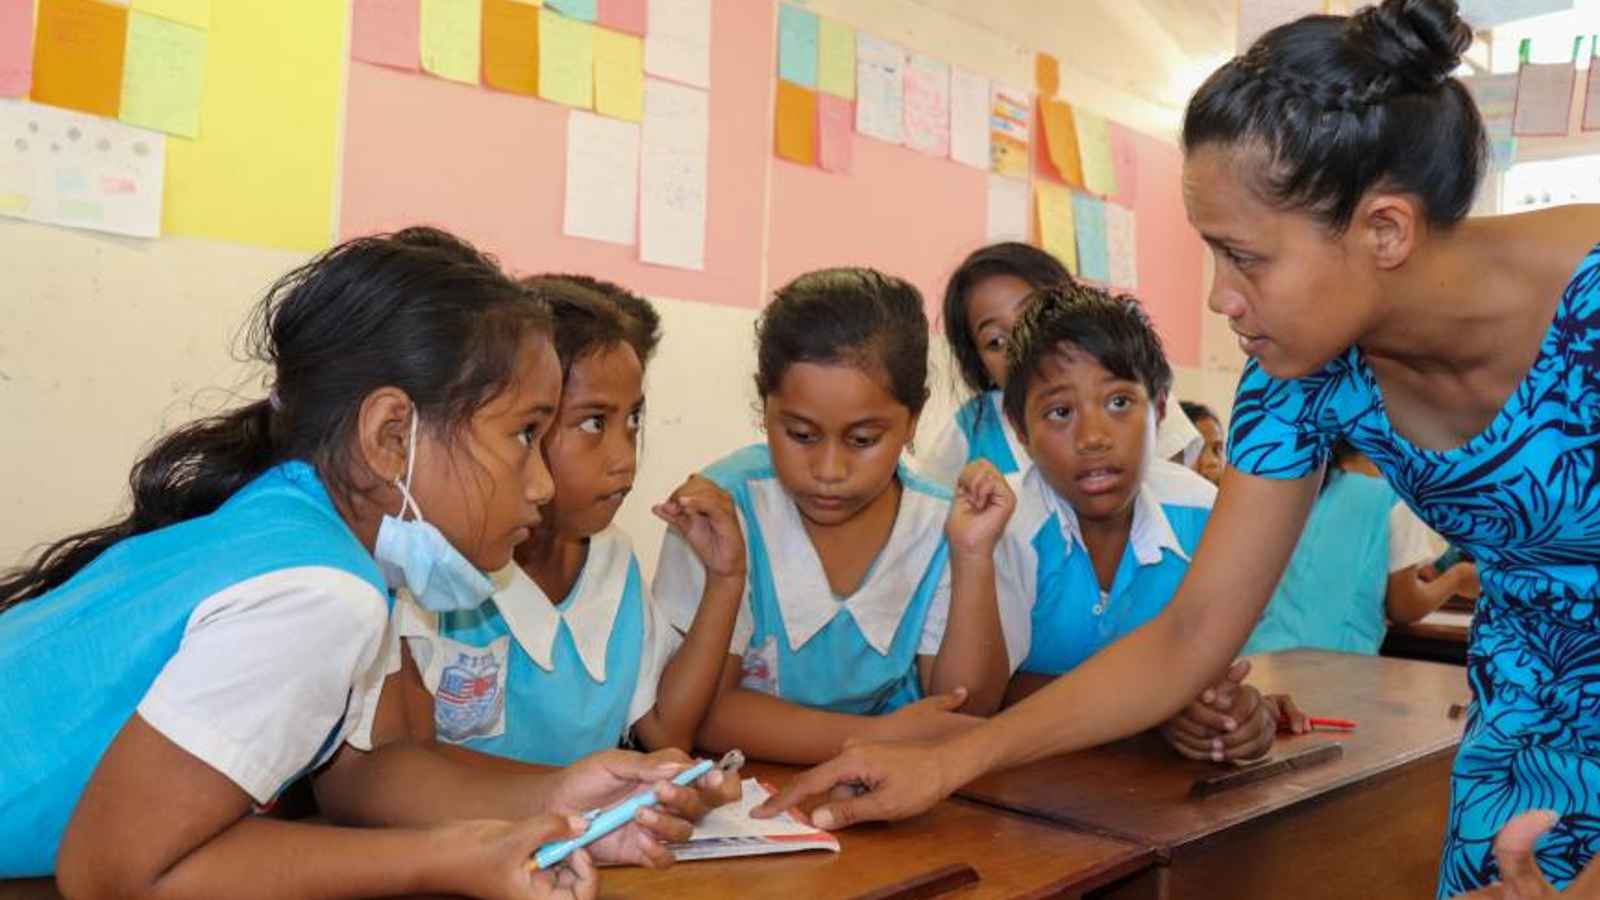 Kiribati: Education Day 2023: Date, History, Facts about Kiribati